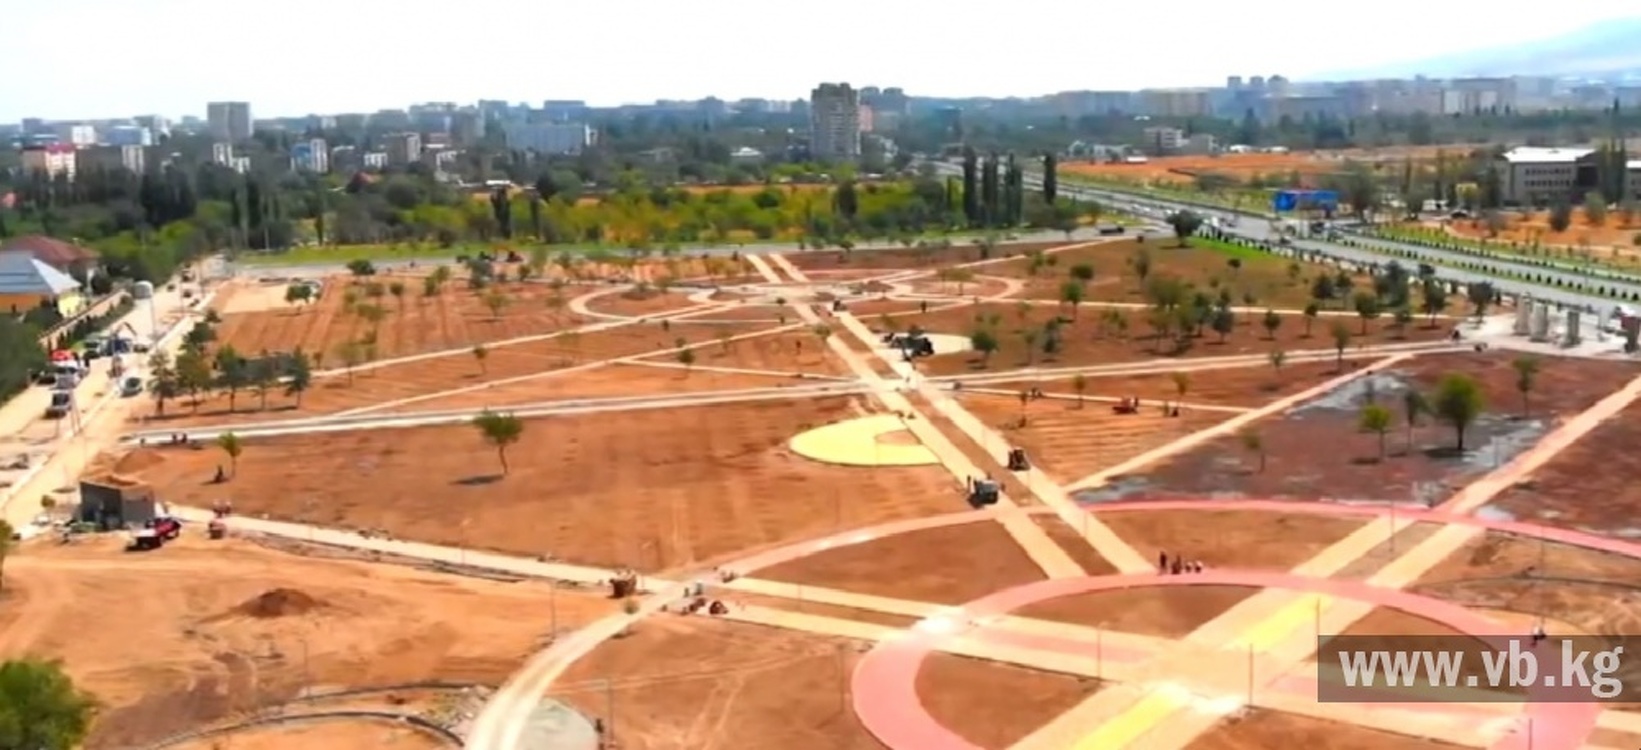 Еще один новый парк появился в Бишкеке (видео) — Today.kg